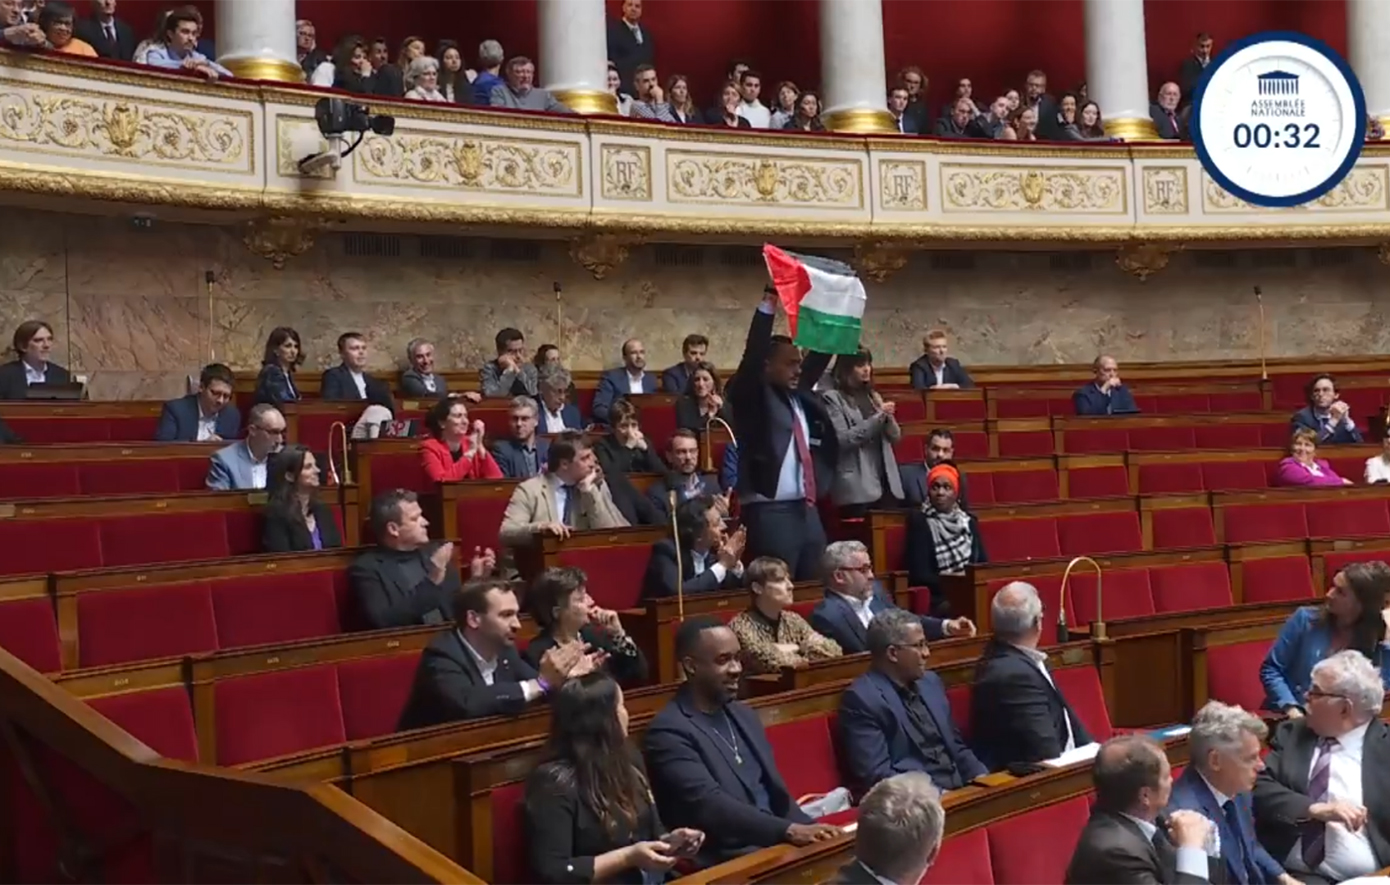 Βουλευτής στη Γαλλία σήκωσε τη σημαία της Παλαιστίνης εν ώρα συνεδρίασης της εθνοσυνέλευσης